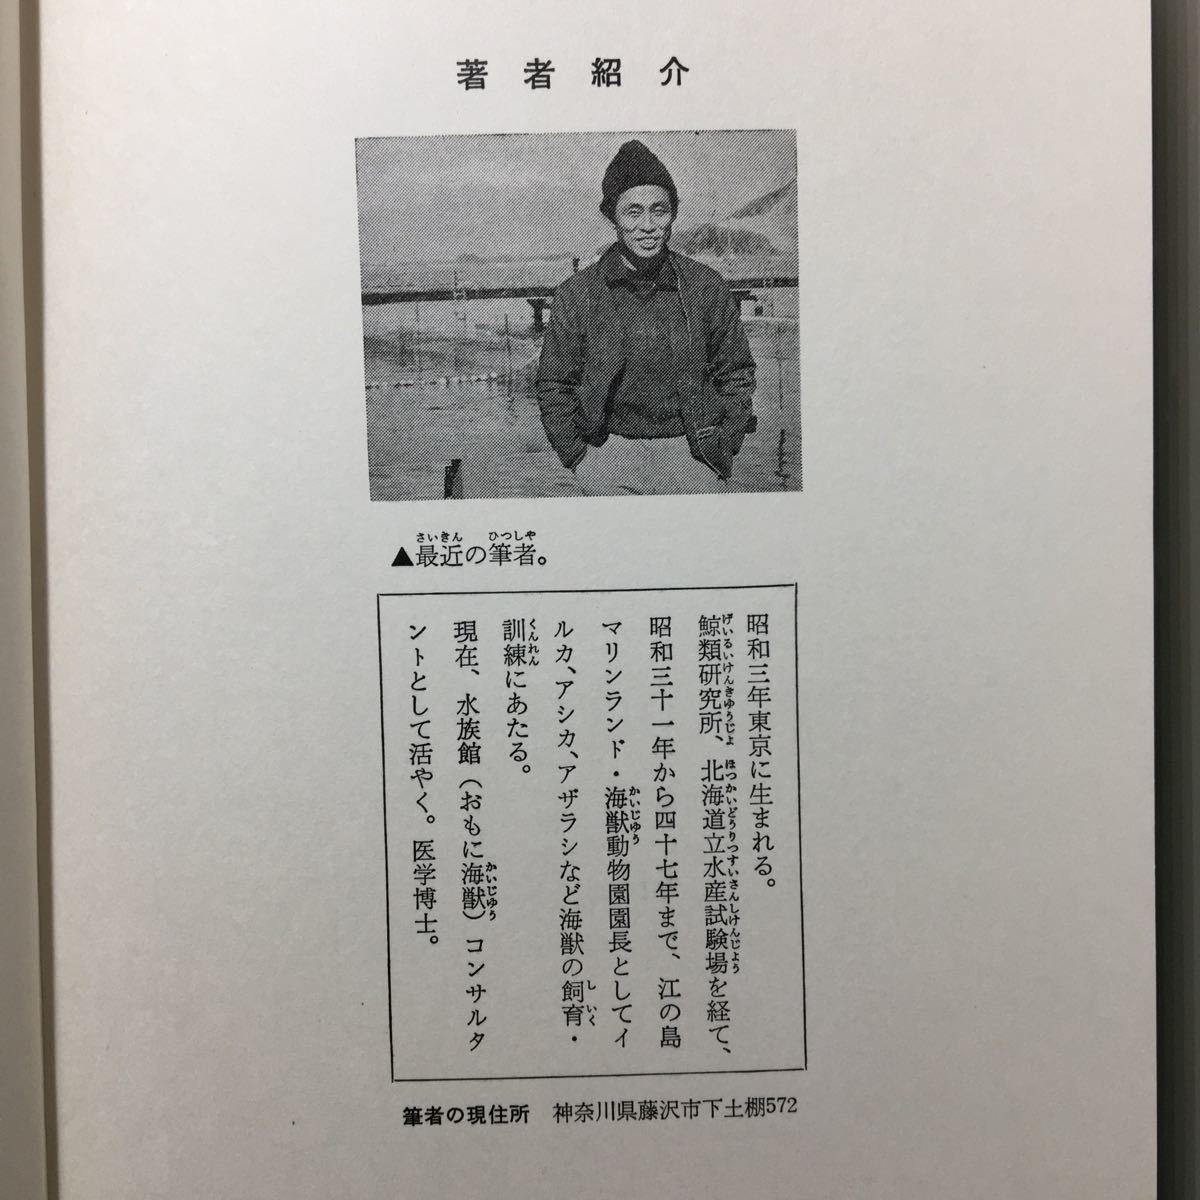 zaa-154♪エコーという名のイルカ 中島将行 (著)現代子どもノンフィクション 4あかね書房 1973/6/25 絶版　稀本